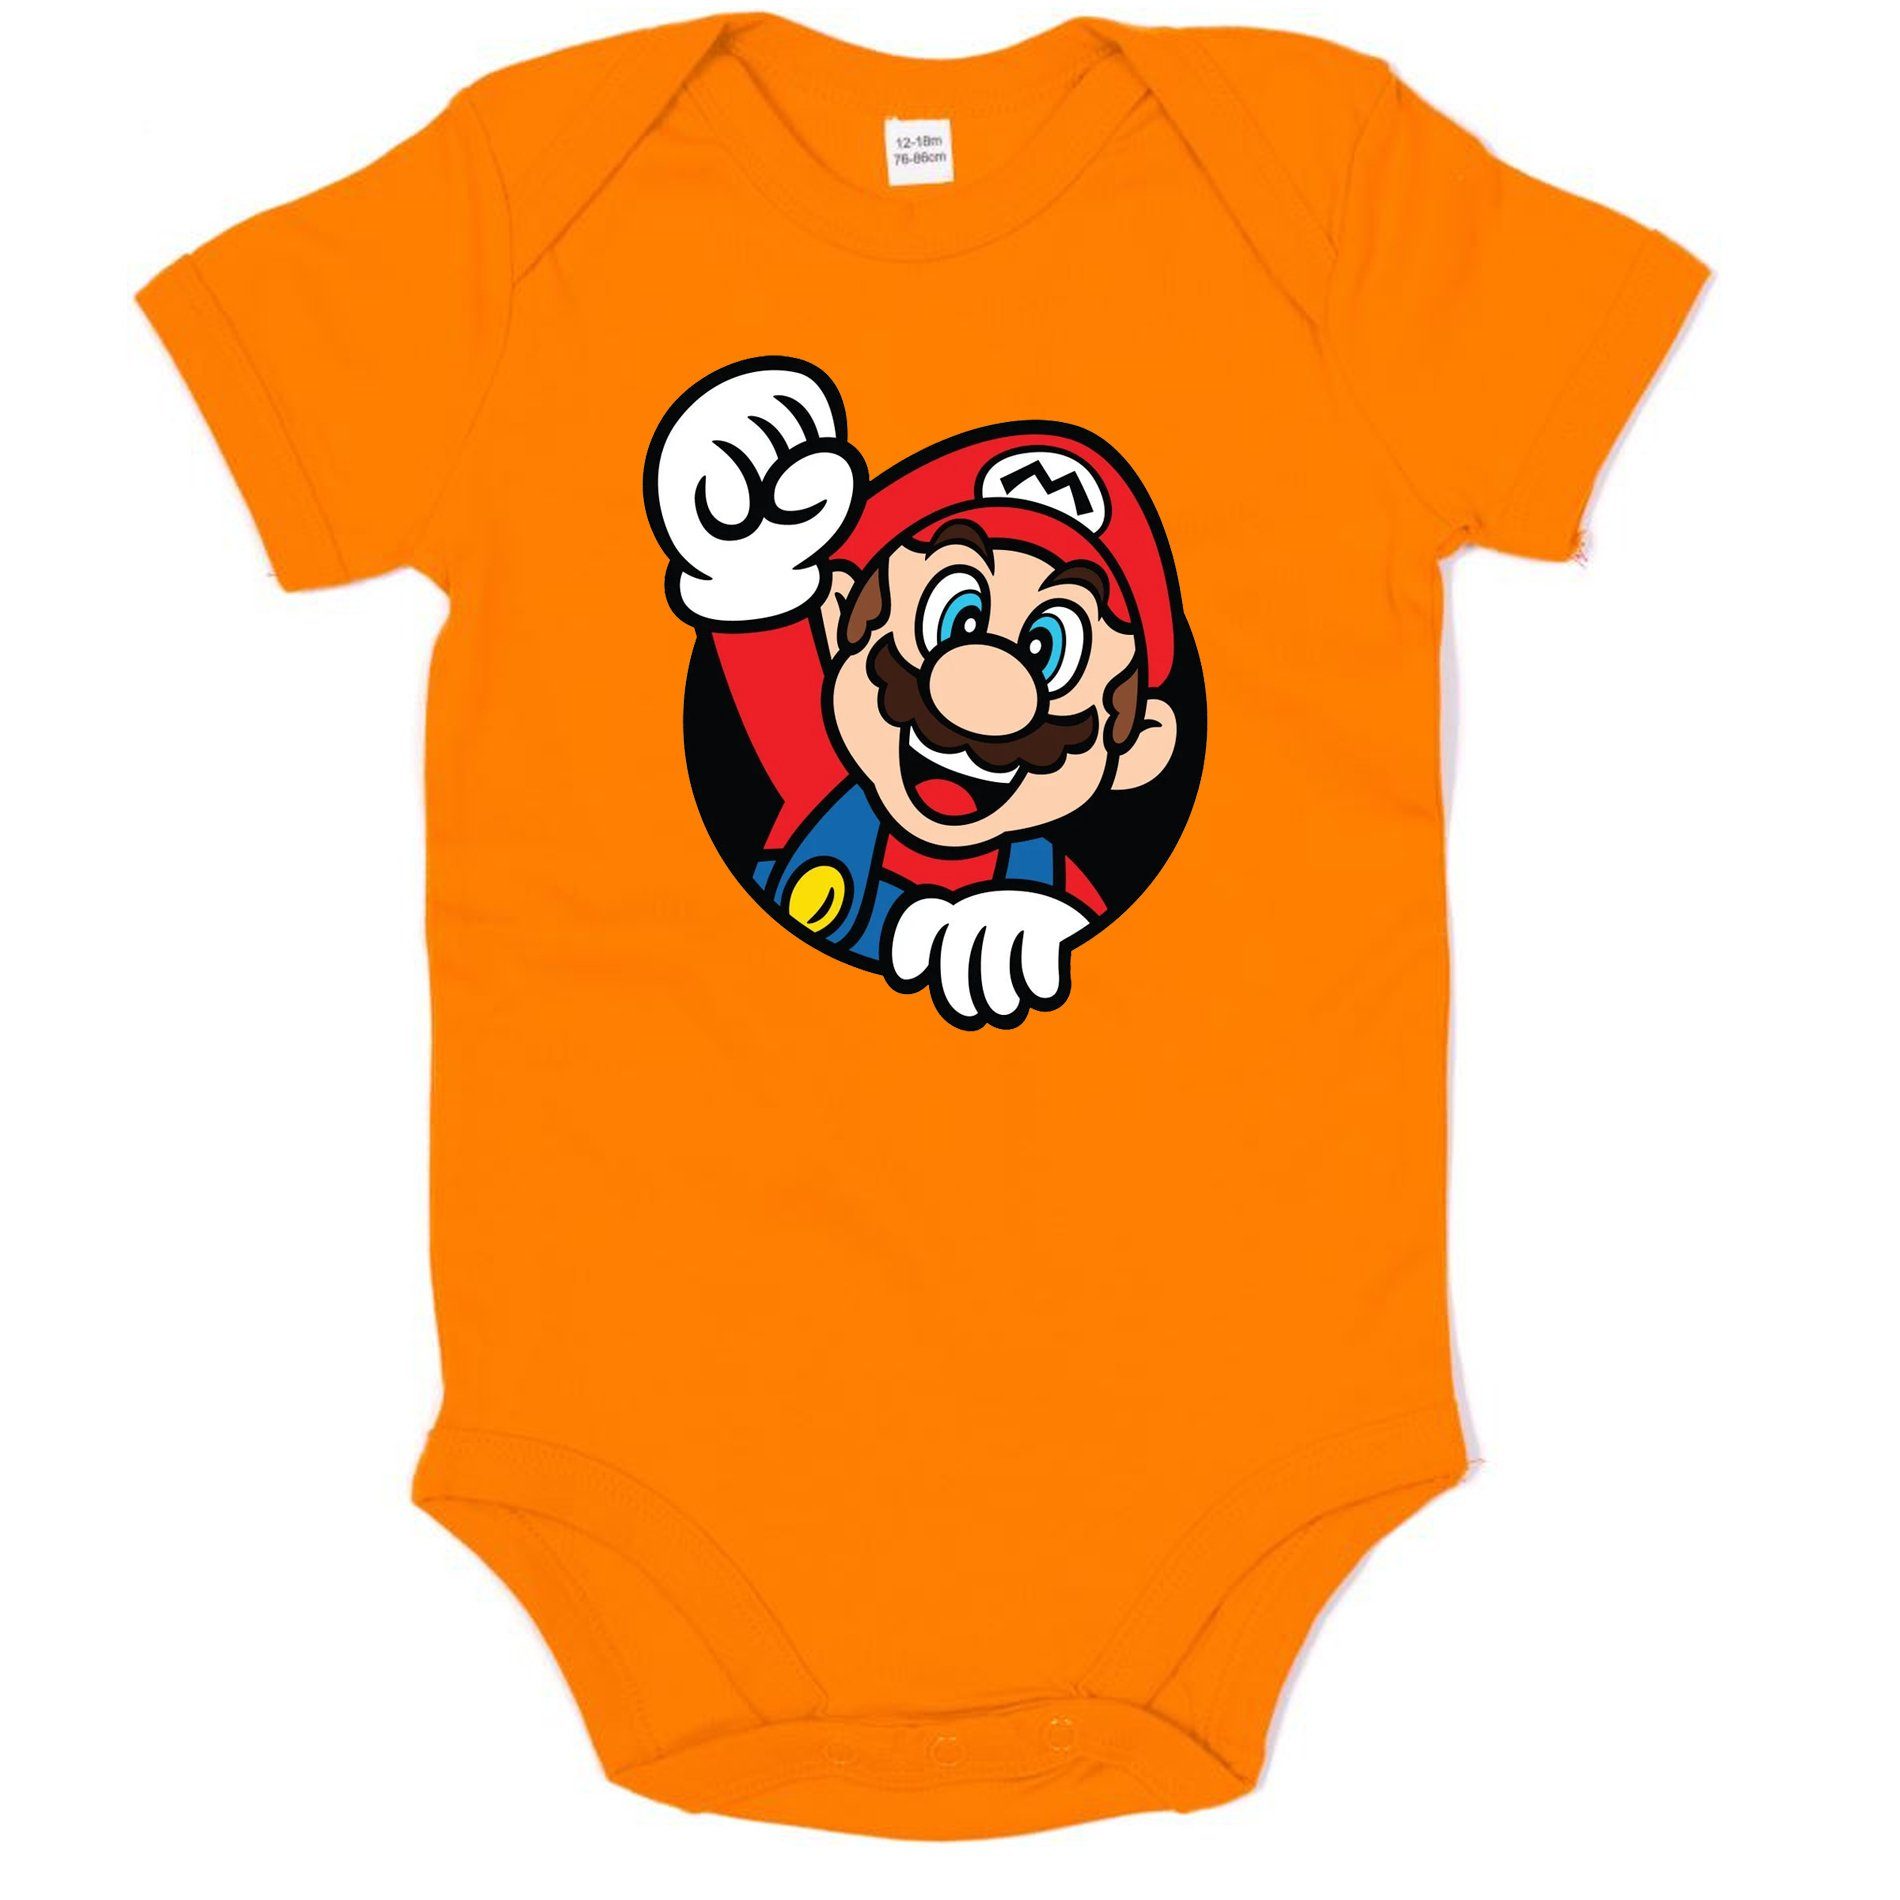 Blondie & Brownie Strampler Kinder Baby Super Mario Faust Konsole Gaming Spiel Nintendo Orange